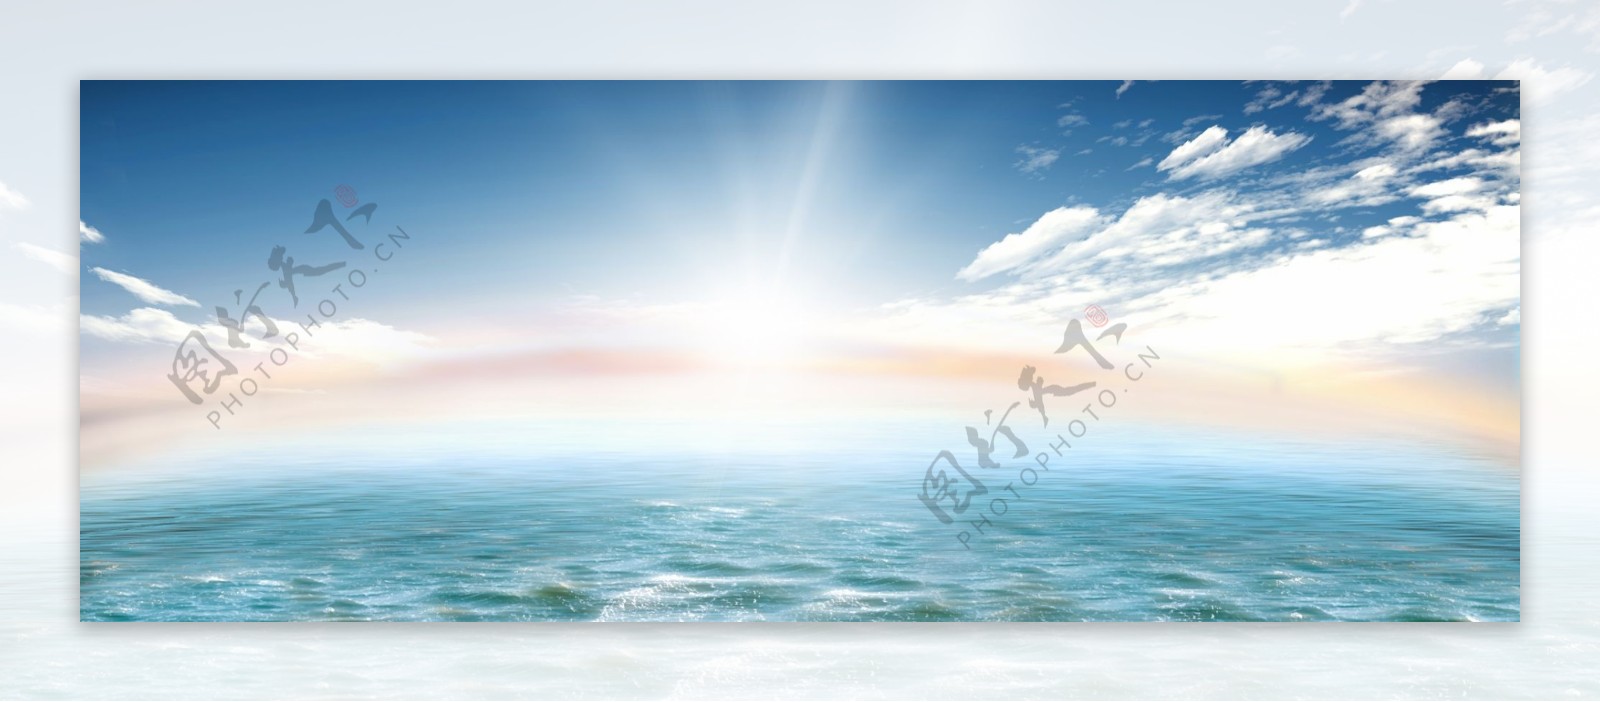 蓝天白云大海帆船背景图片